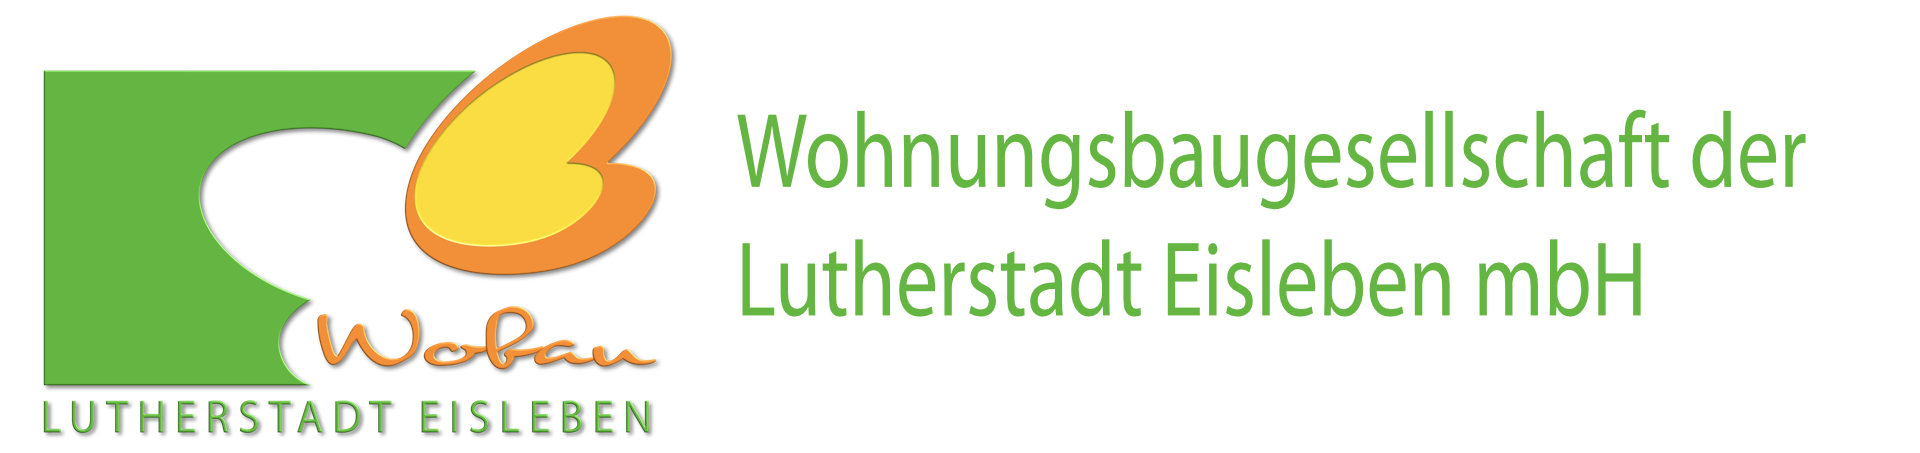 Wobau Lutherstadt Eisleben | wobau-eisleben.de